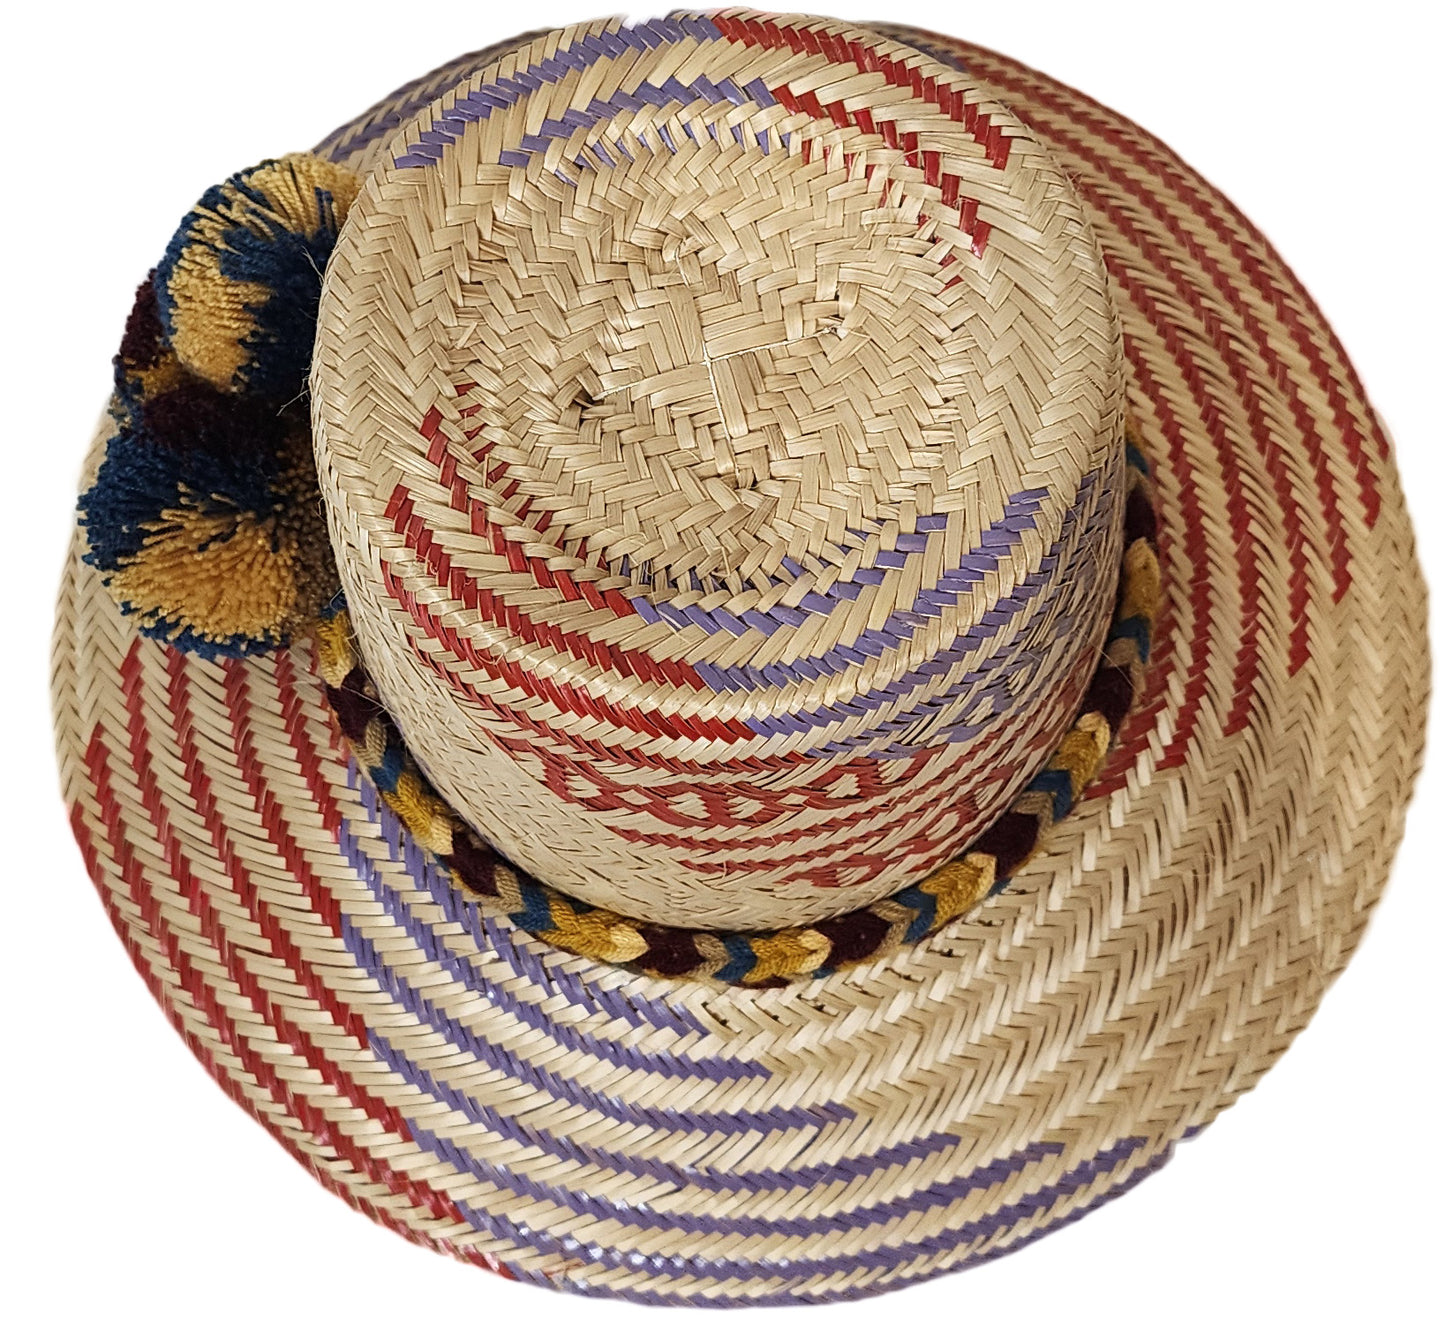 Marley Handmade Wayuu Hat - Wuitusu